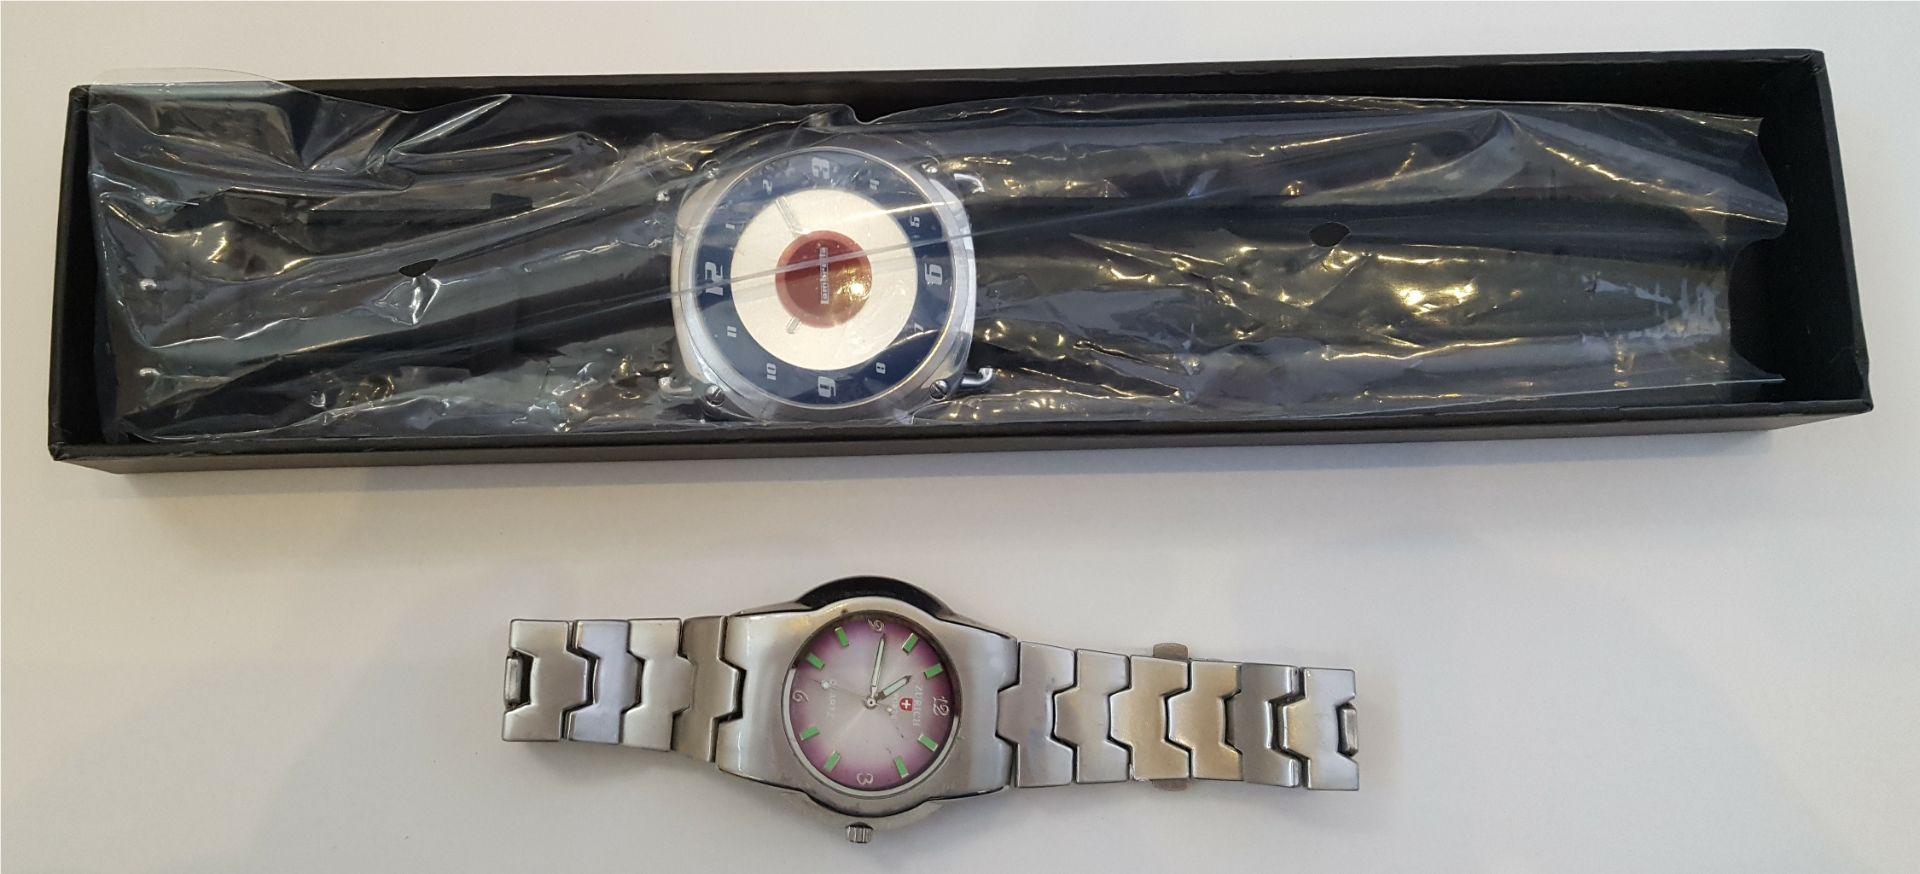 Vintage Wrist Watches 1 x Zurich Sports & 1 x Lambretta - Image 2 of 4